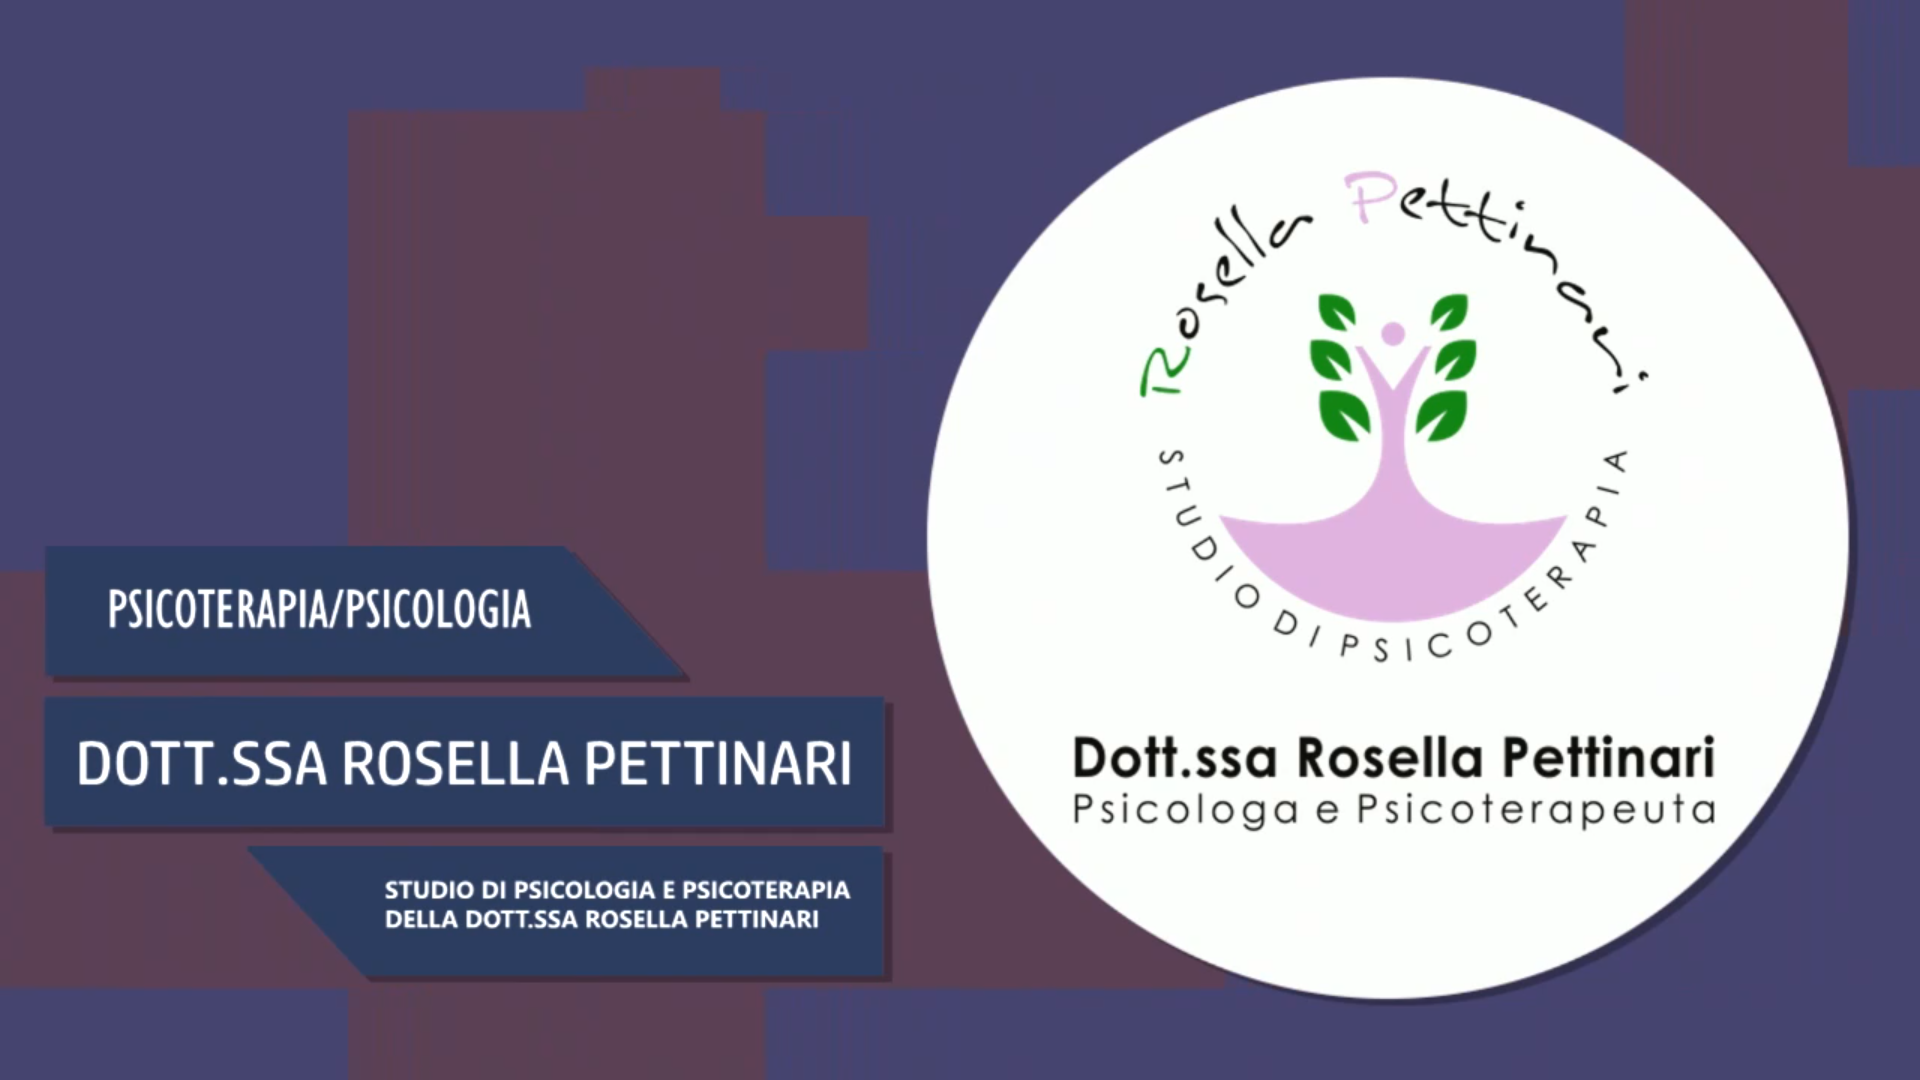 Intervista alla Dott.ssa Rosella Pettinari – Il suo studio